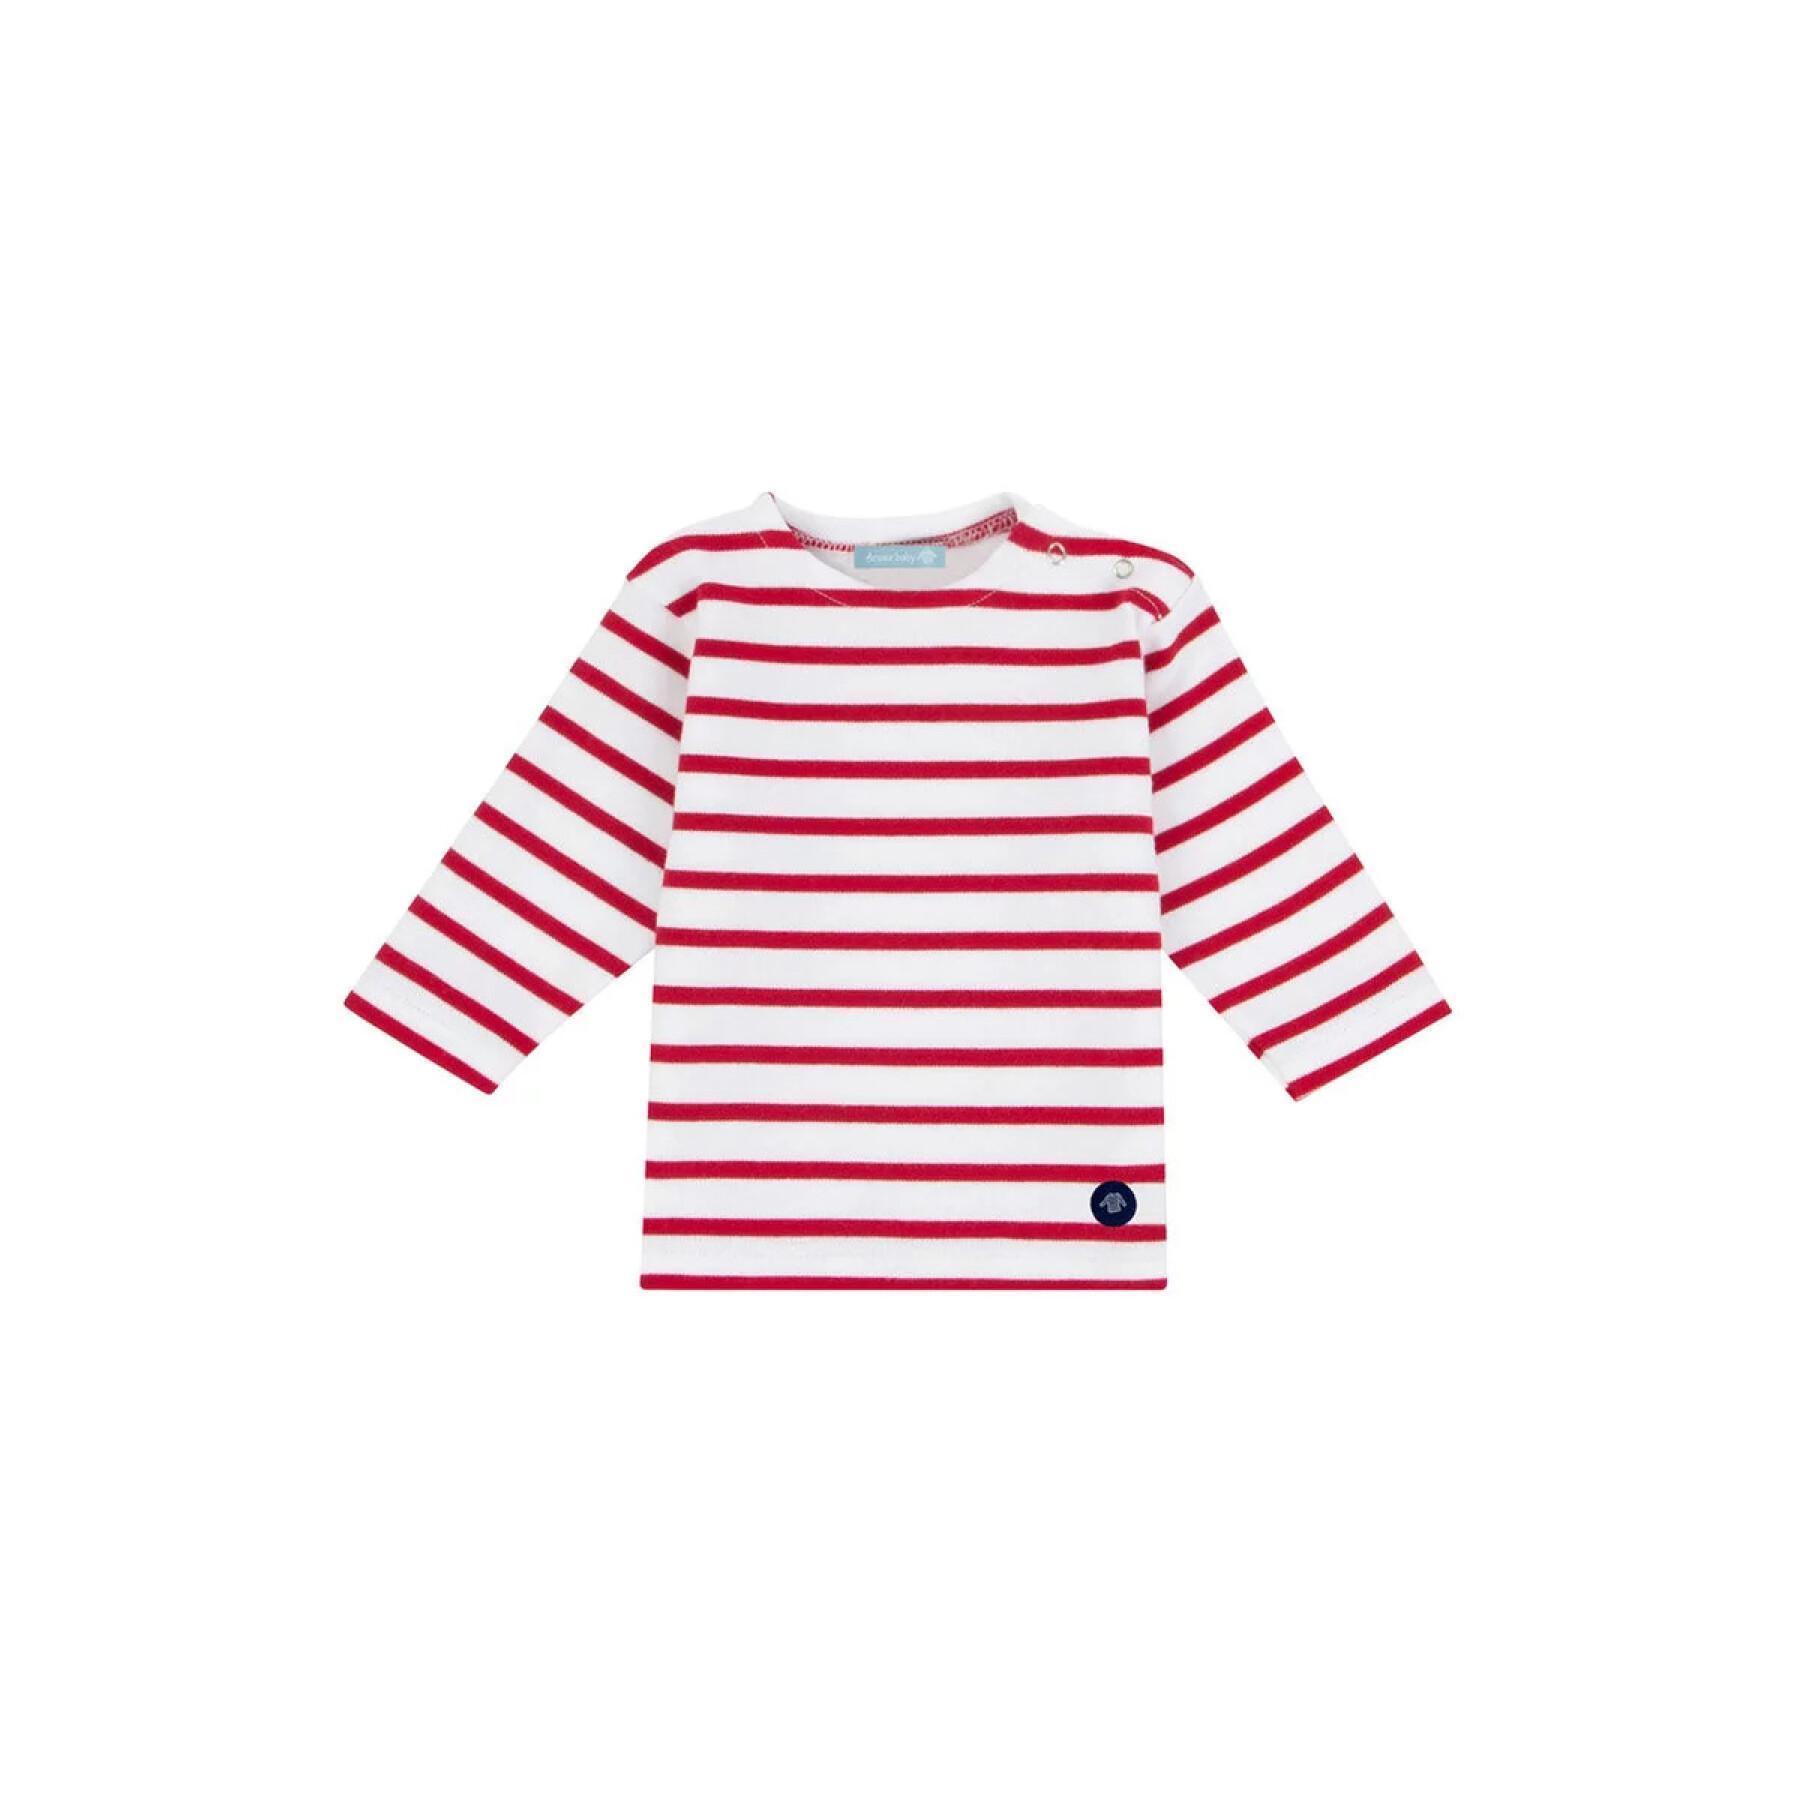 Camiseta de bebê marinheiro Armor-Lux loctudy